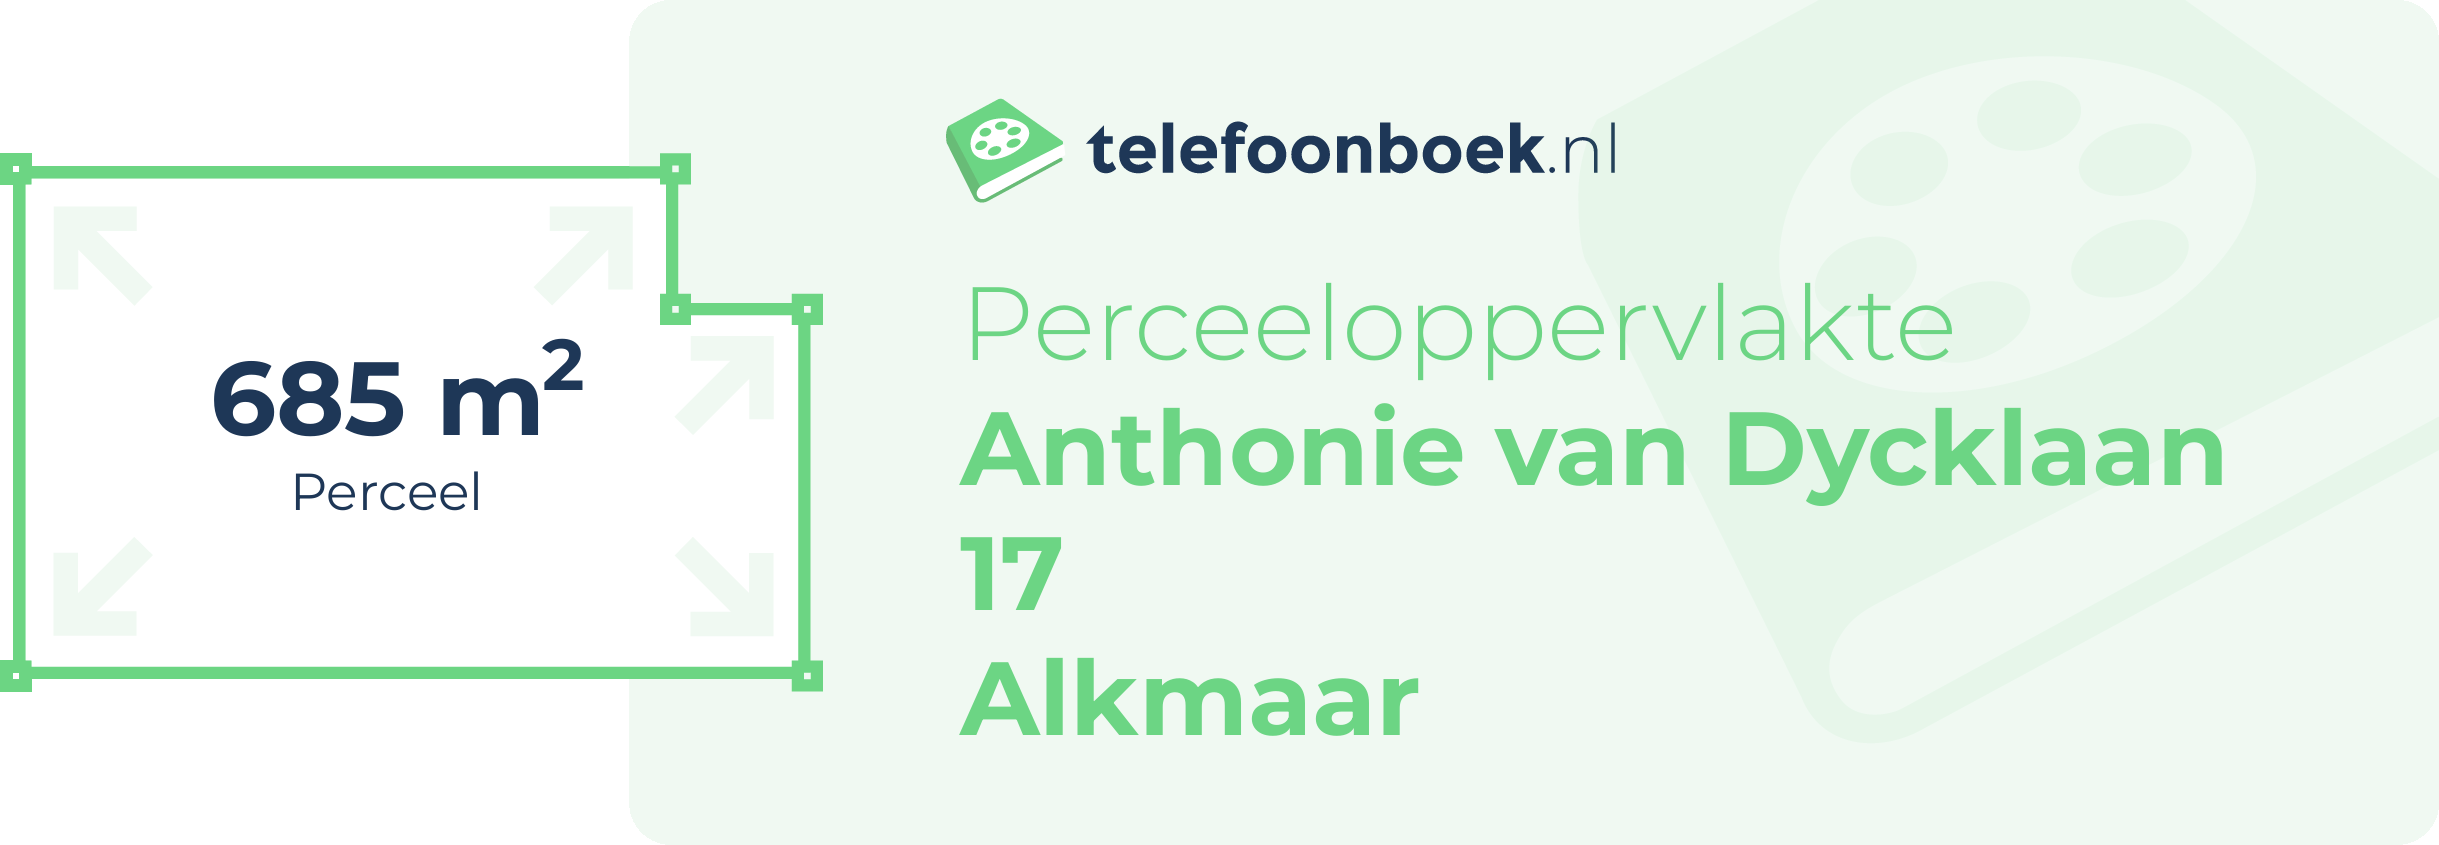 Perceeloppervlakte Anthonie Van Dycklaan 17 Alkmaar